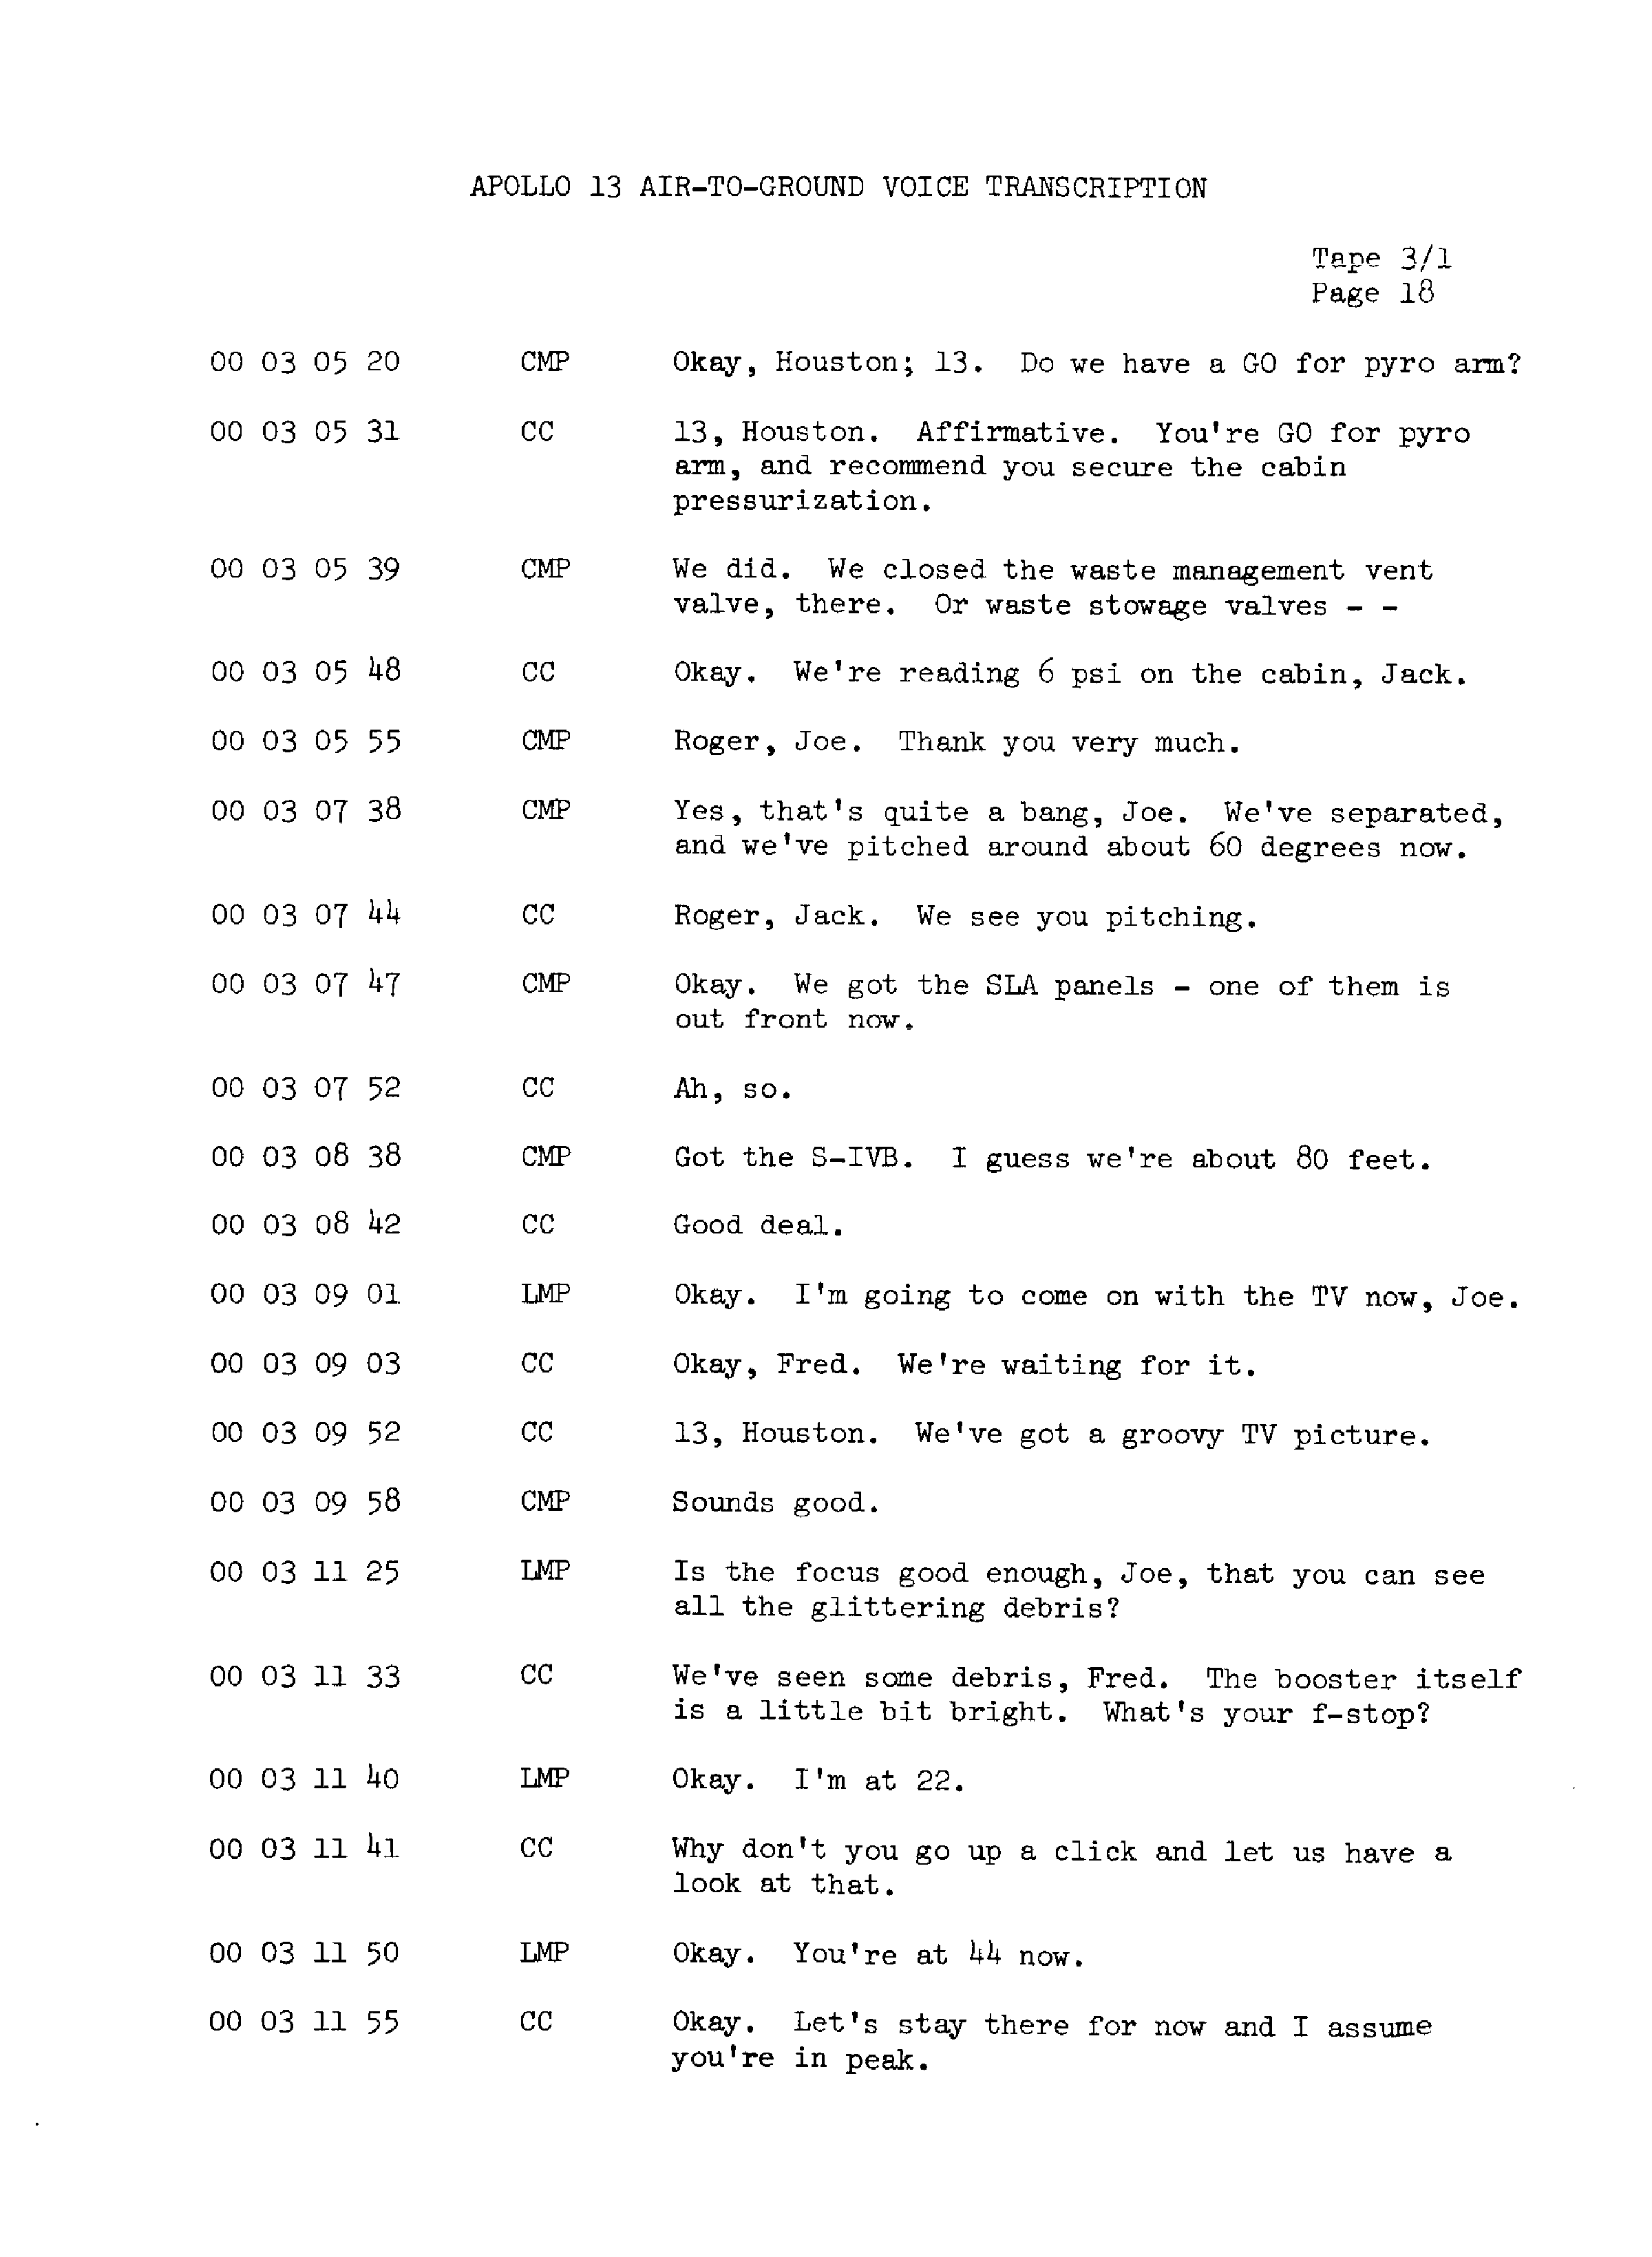 Page 25 of Apollo 13’s original transcript